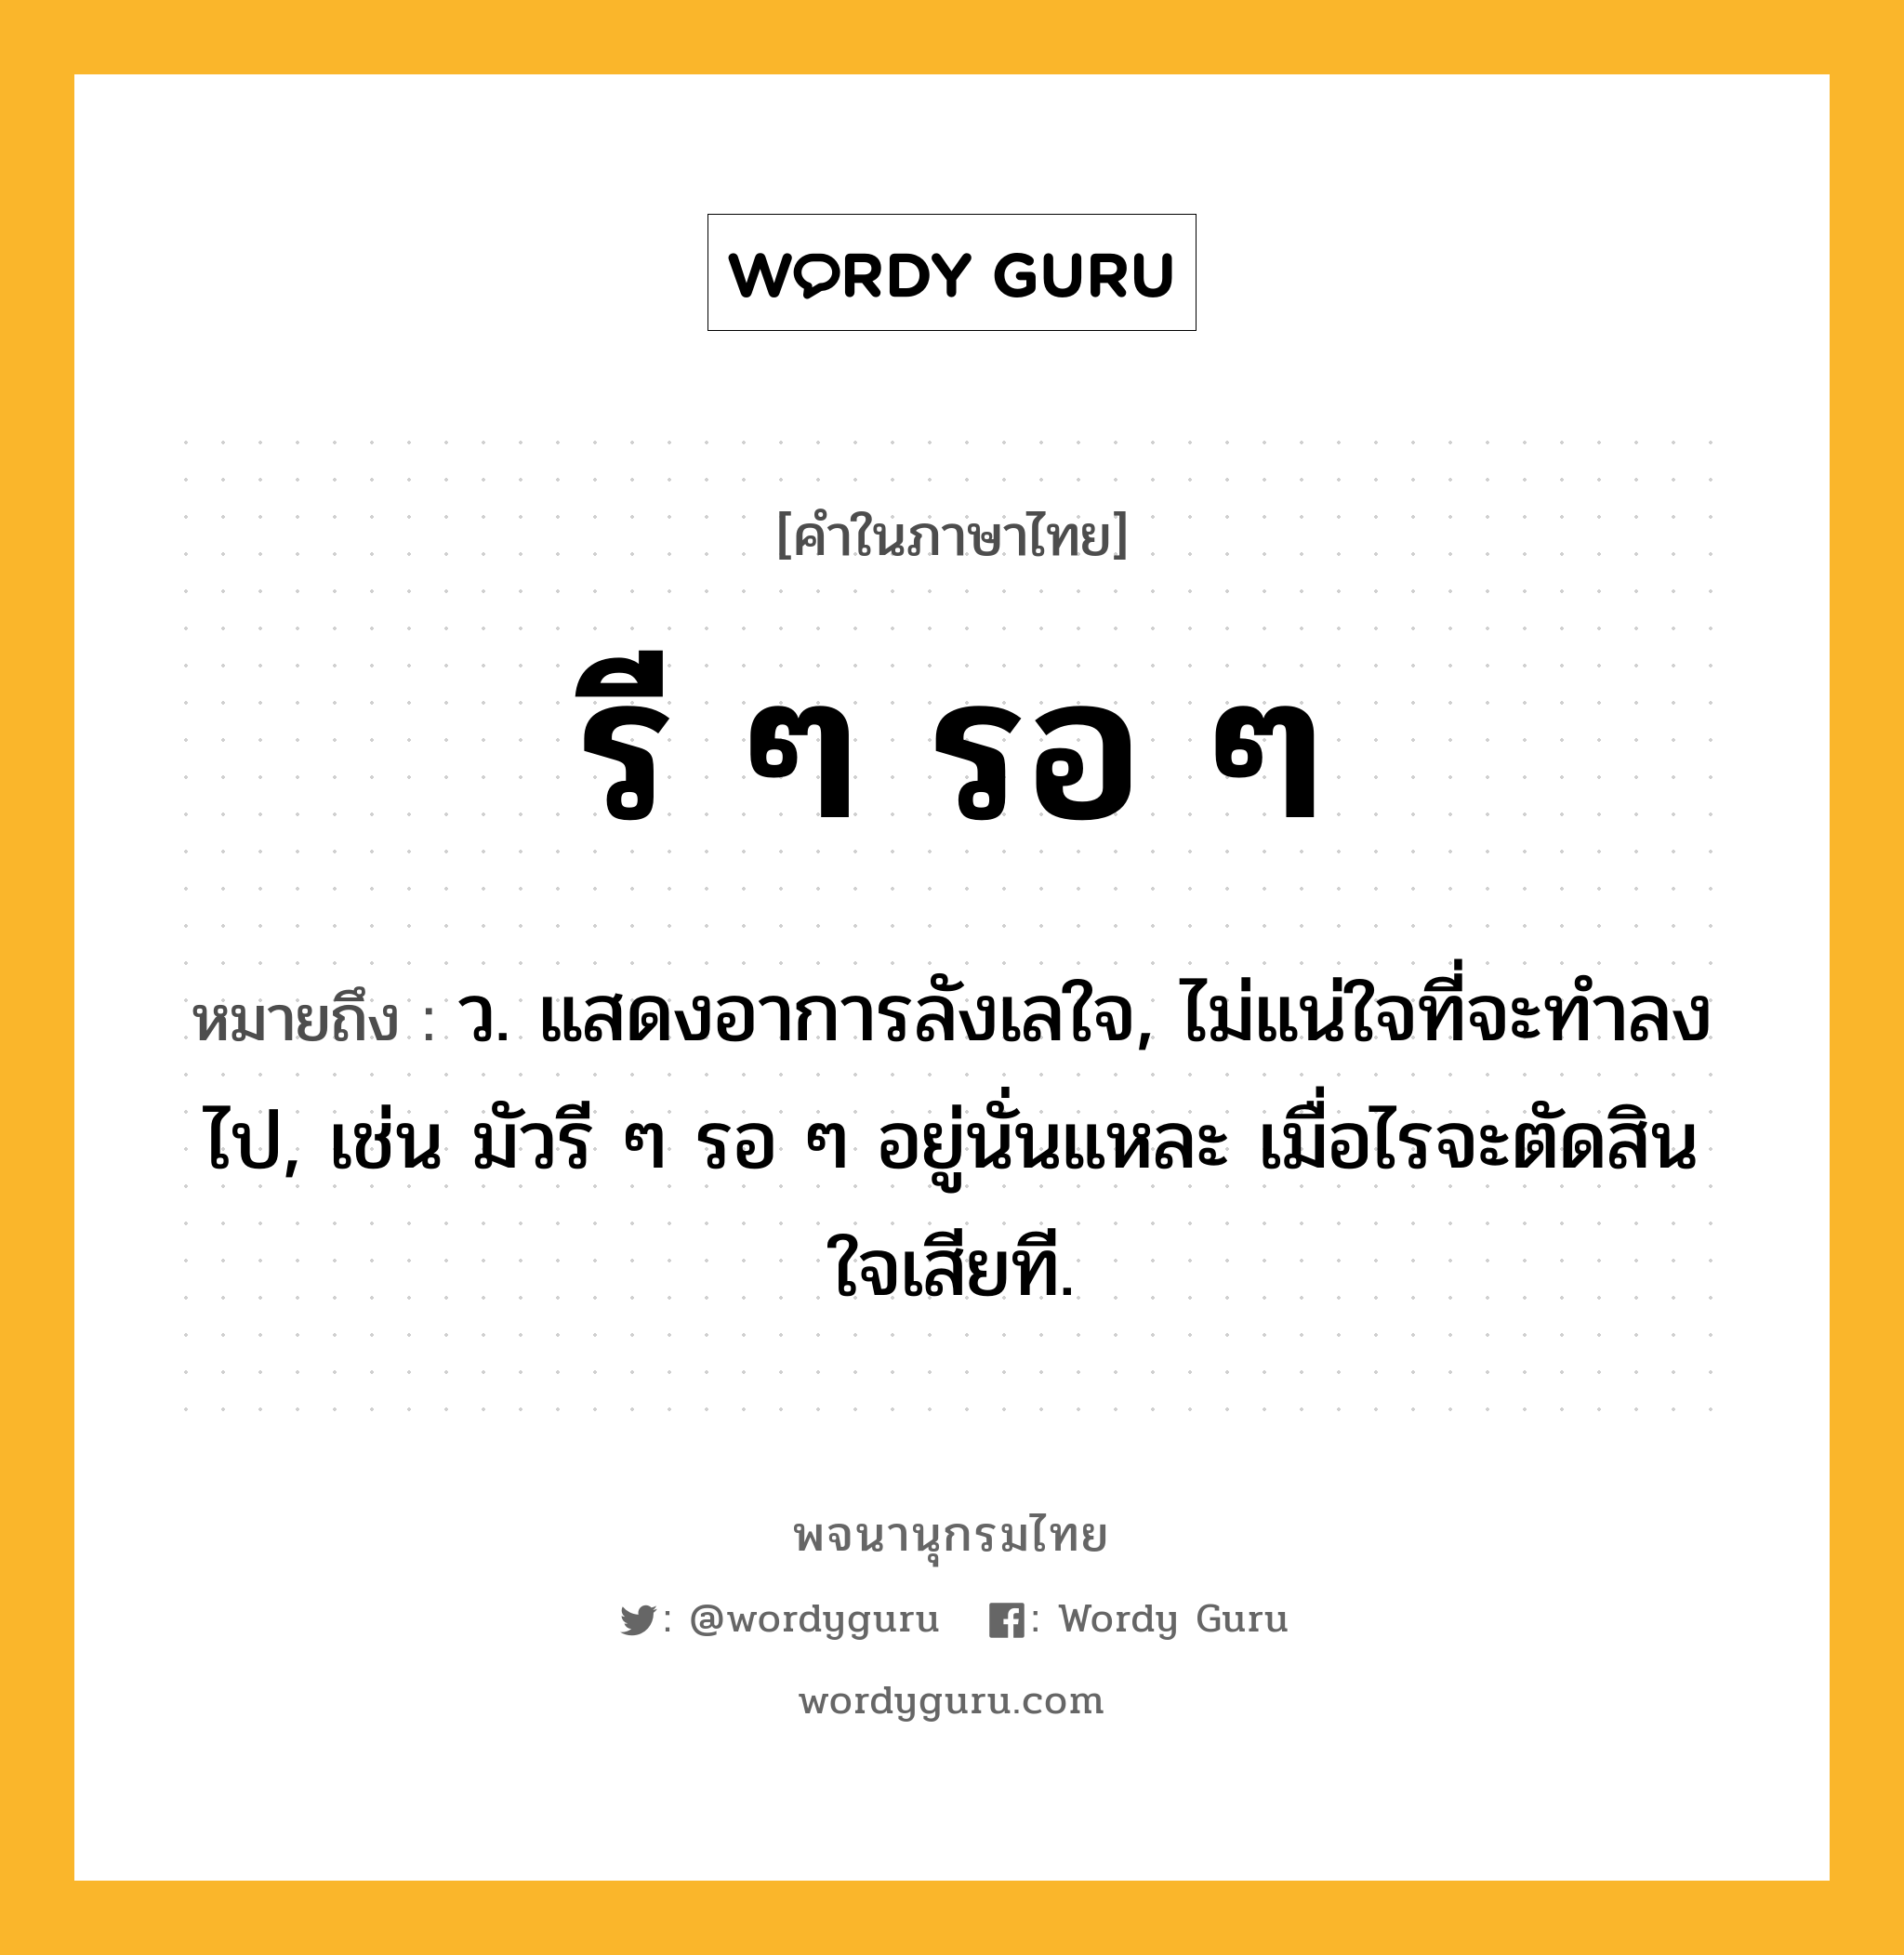 รี ๆ รอ ๆ ความหมาย หมายถึงอะไร?, คำในภาษาไทย รี ๆ รอ ๆ หมายถึง ว. แสดงอาการลังเลใจ, ไม่แน่ใจที่จะทําลงไป, เช่น มัวรี ๆ รอ ๆ อยู่นั่นแหละ เมื่อไรจะตัดสินใจเสียที.